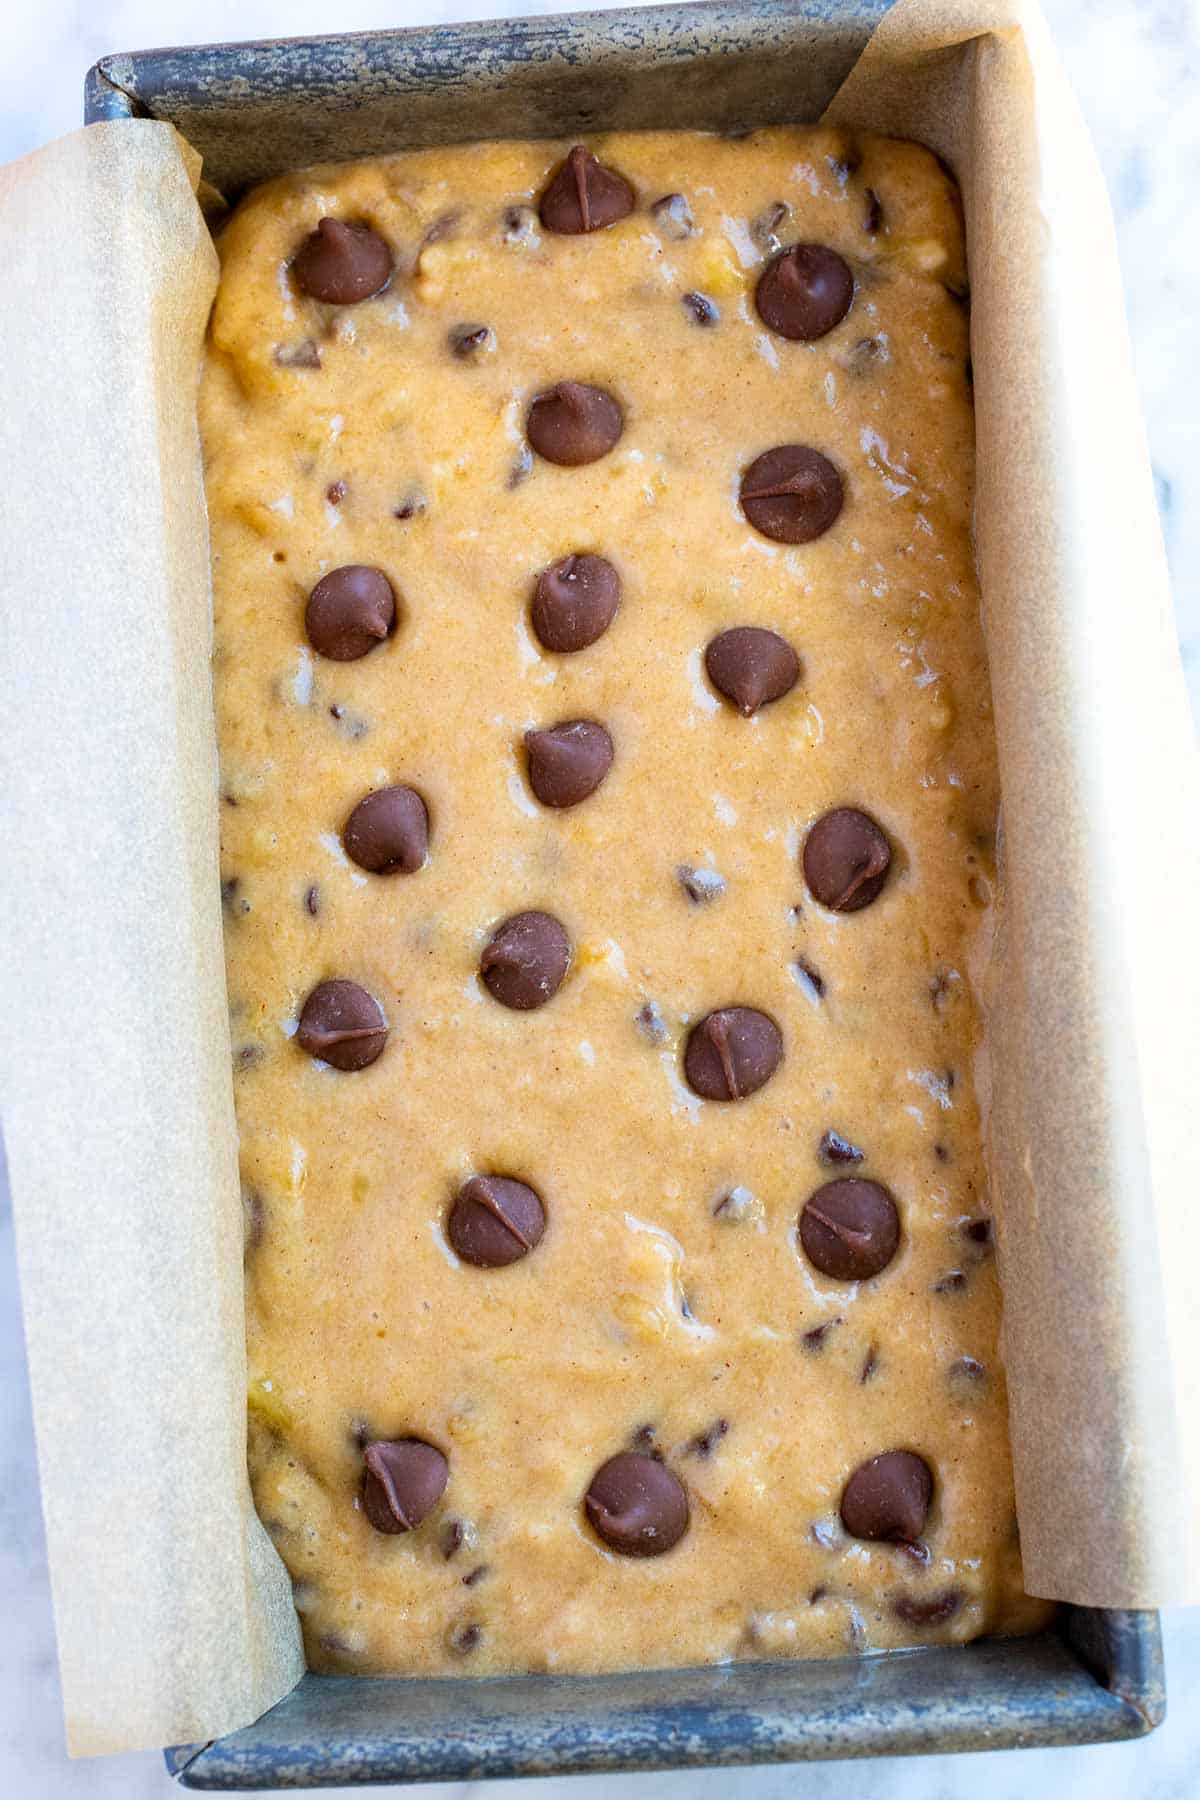 लोफ पैन में केले के ब्रेड बैटर के ऊपर कुछ अतिरिक्त चॉकलेट चिप्स डालें।